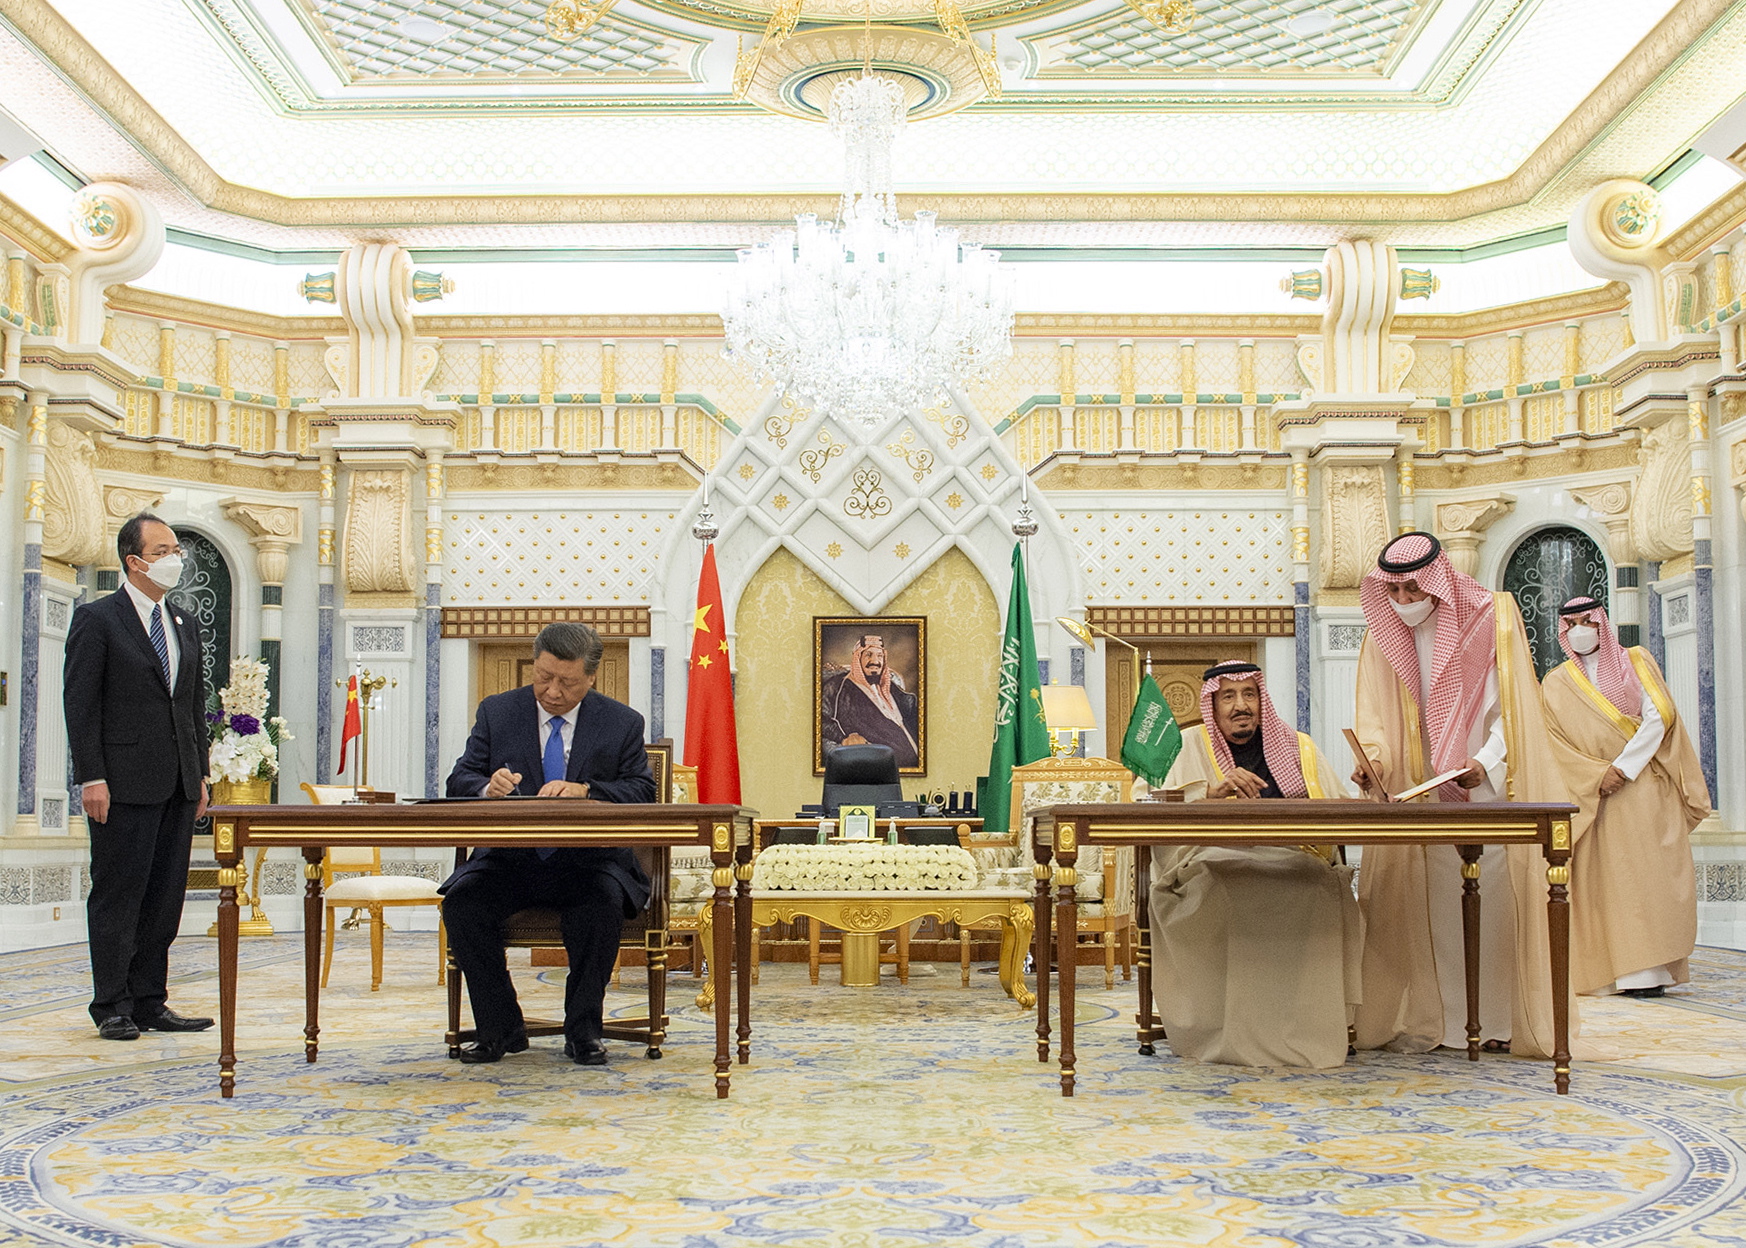 Las diferentes reuniones celebradas hoy confirmaron también el alineamiento político de los árabes con China. (EFE)